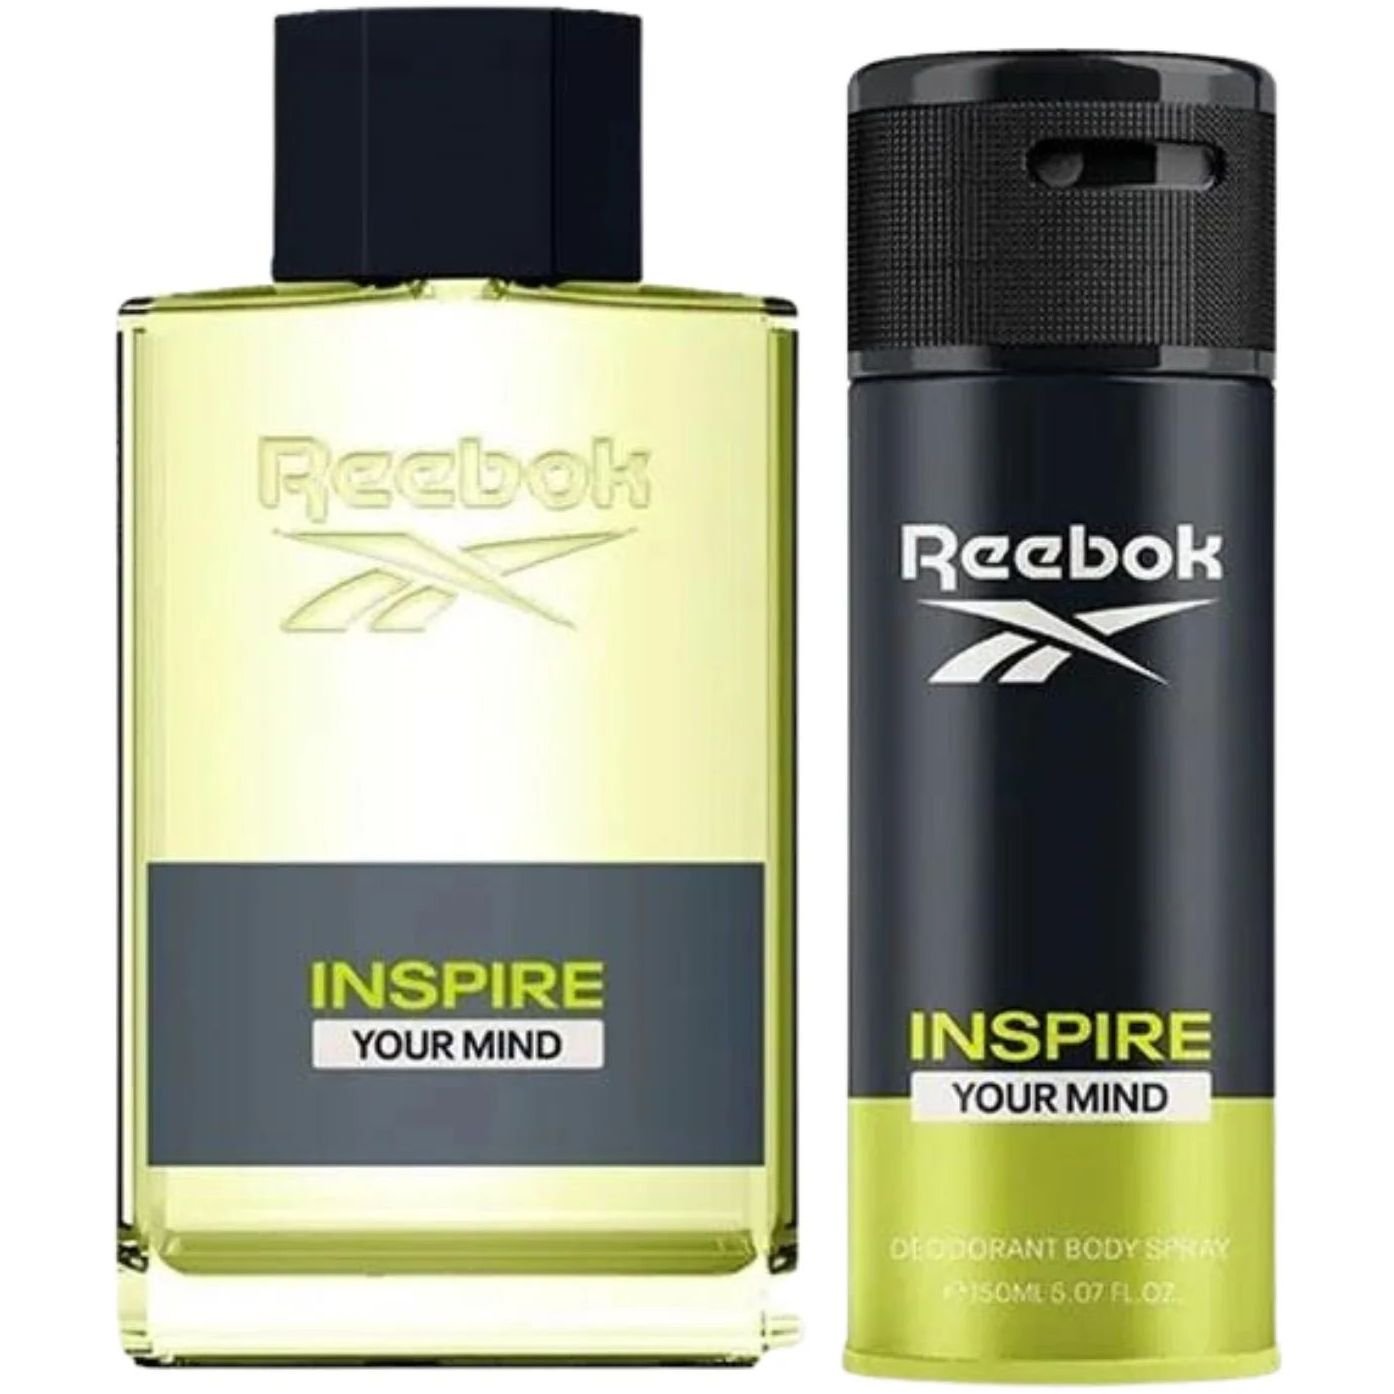 Подарунковий набір для чоловіків Reebok Inspire your mind: Туалетна вода 100 мл + Дезодорант 150 мл - фото 2